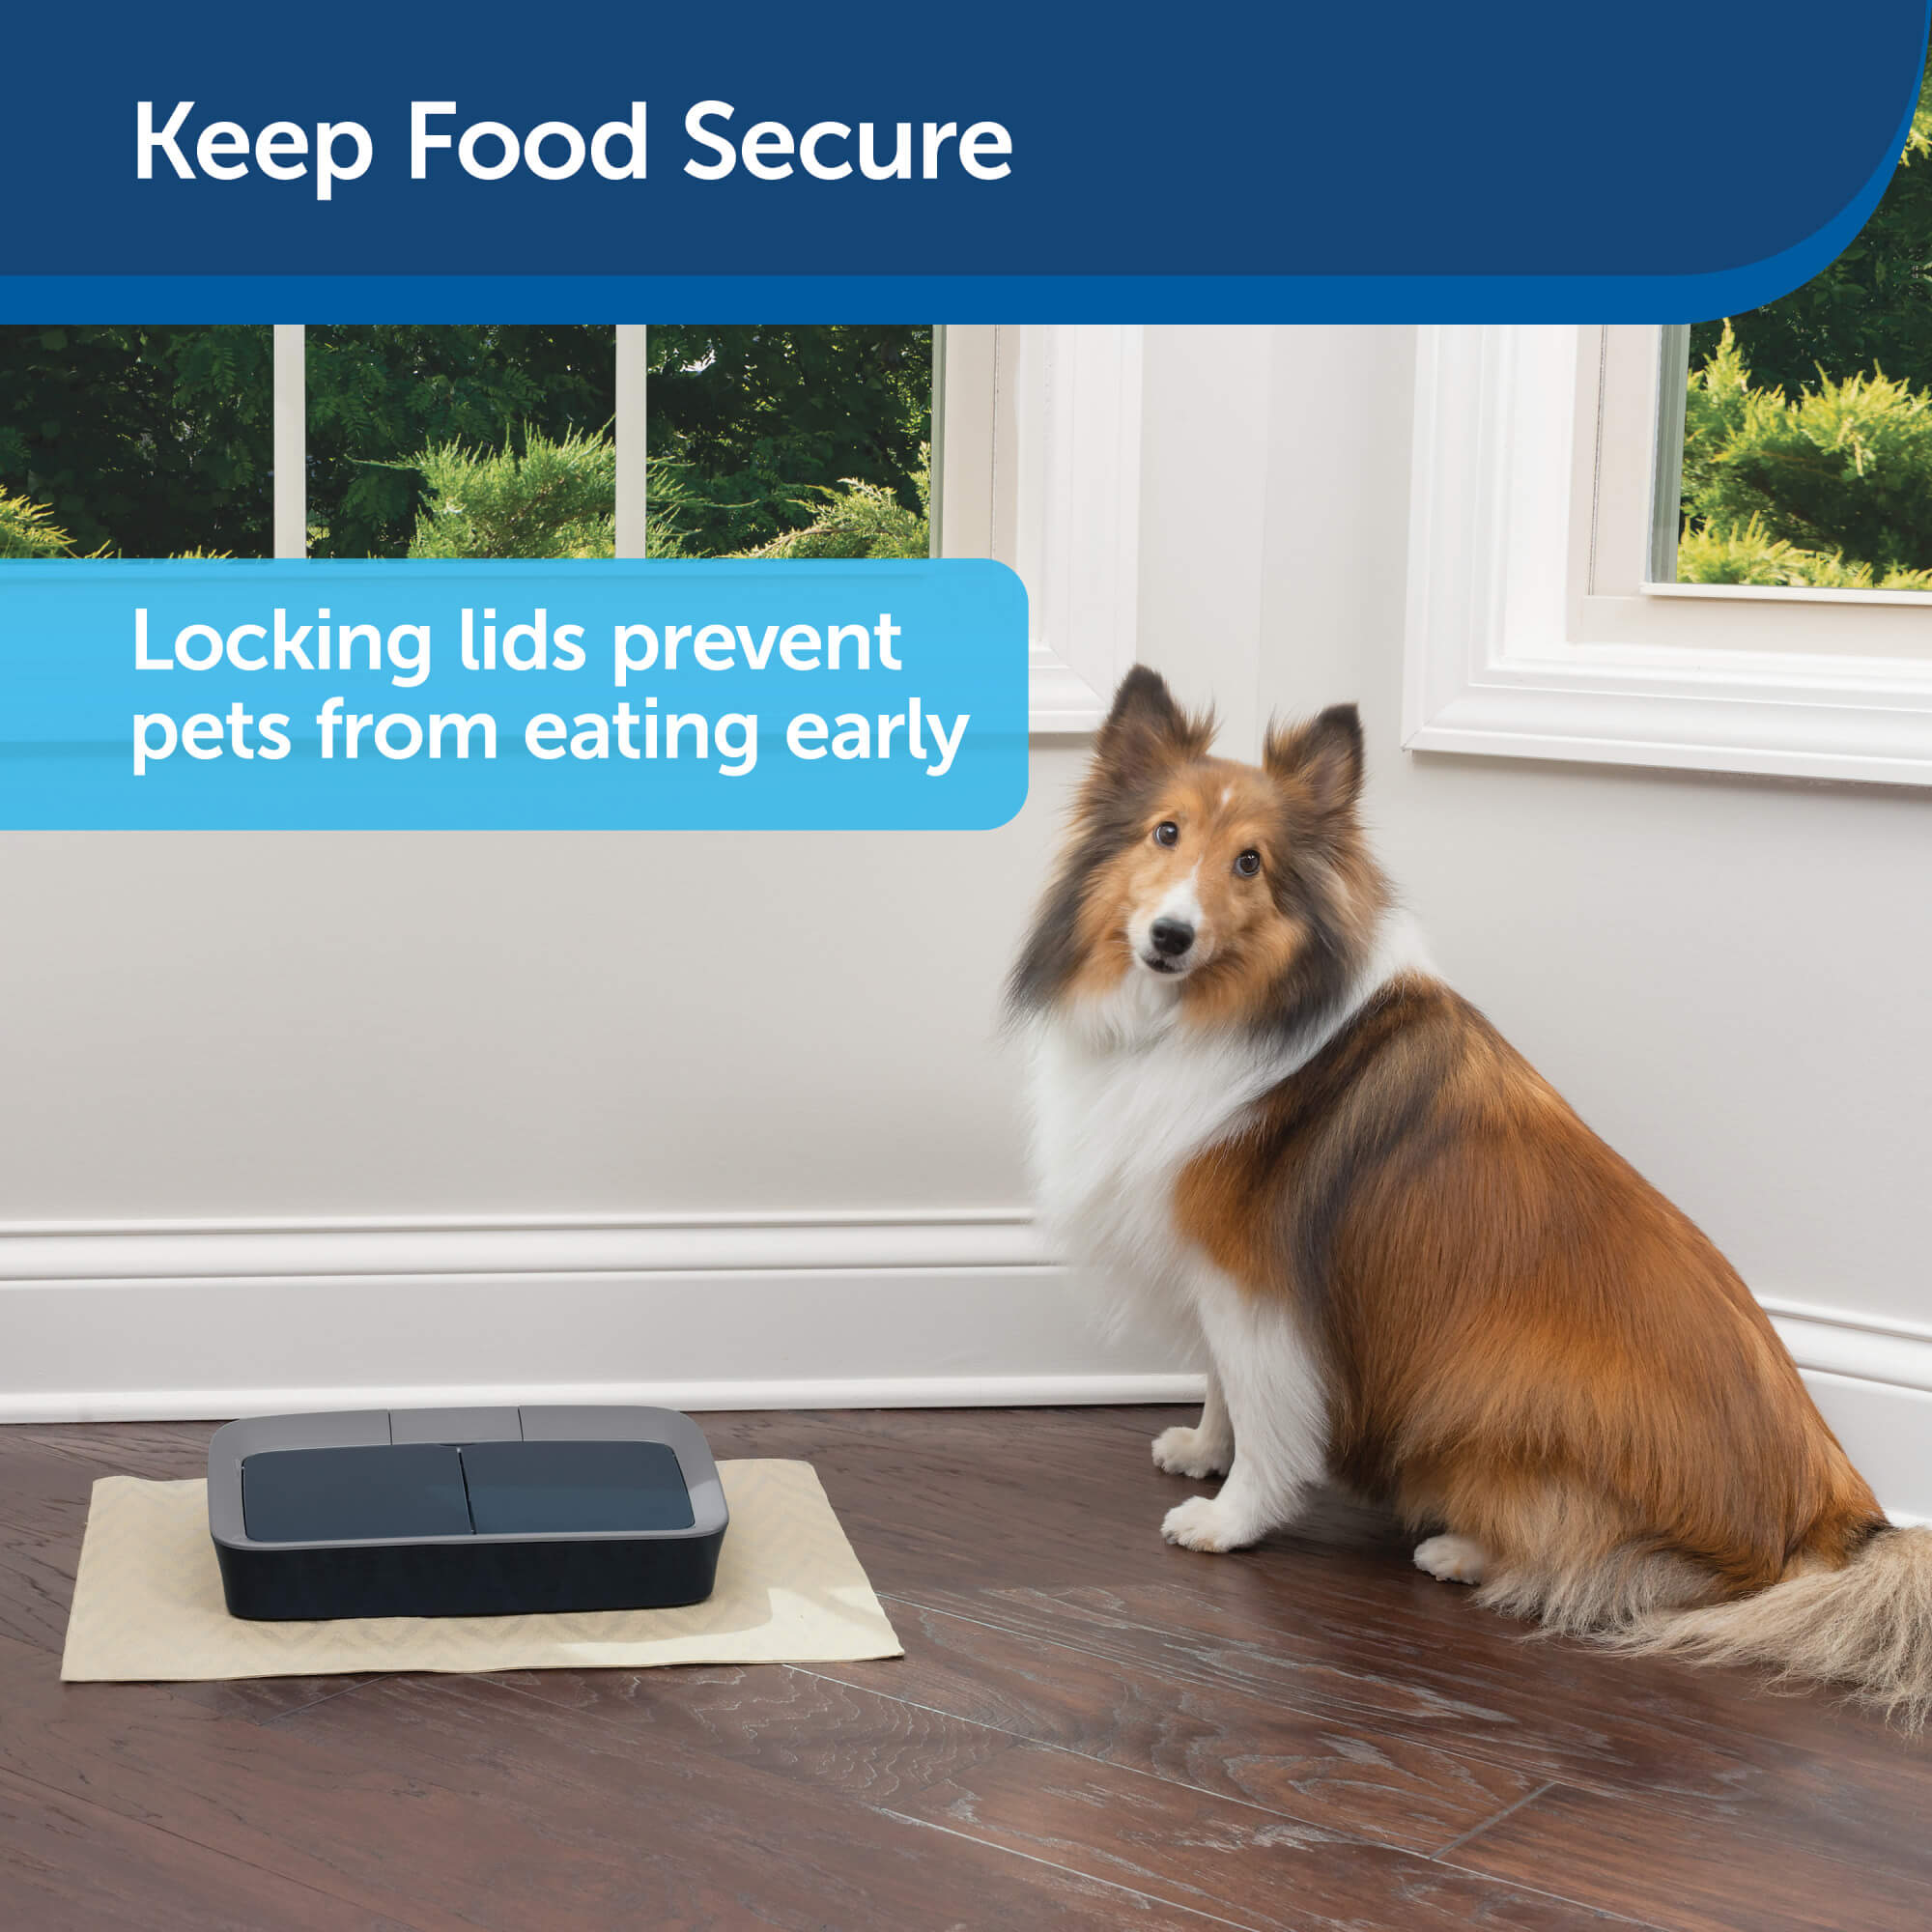 Keep food secure